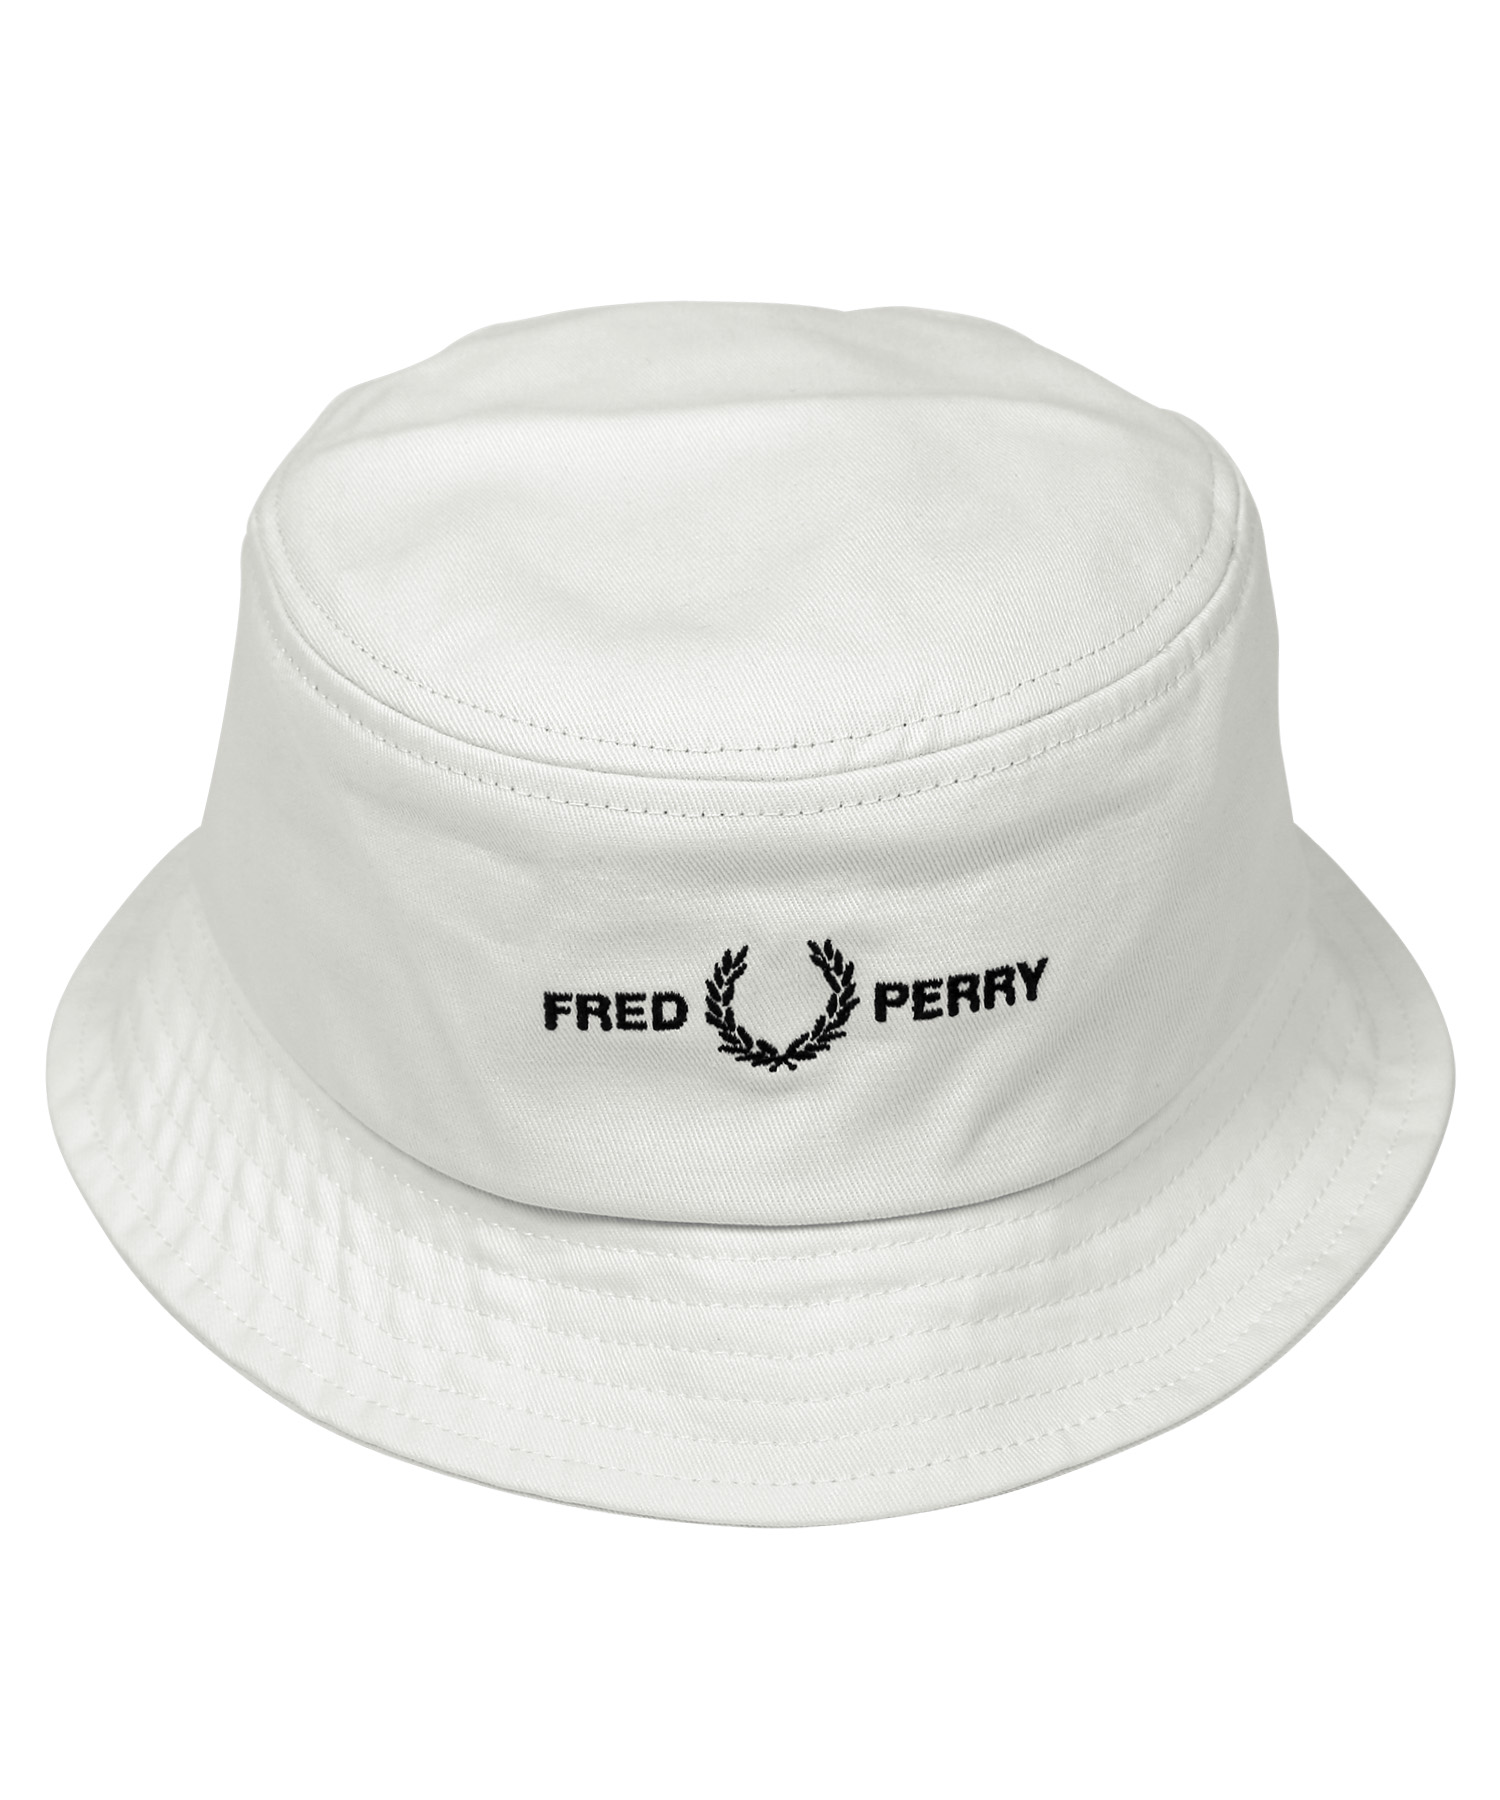 フレッドペリー FRED PERRY バケットハット ユニセックス 帽子 コットン メンズ レディー...